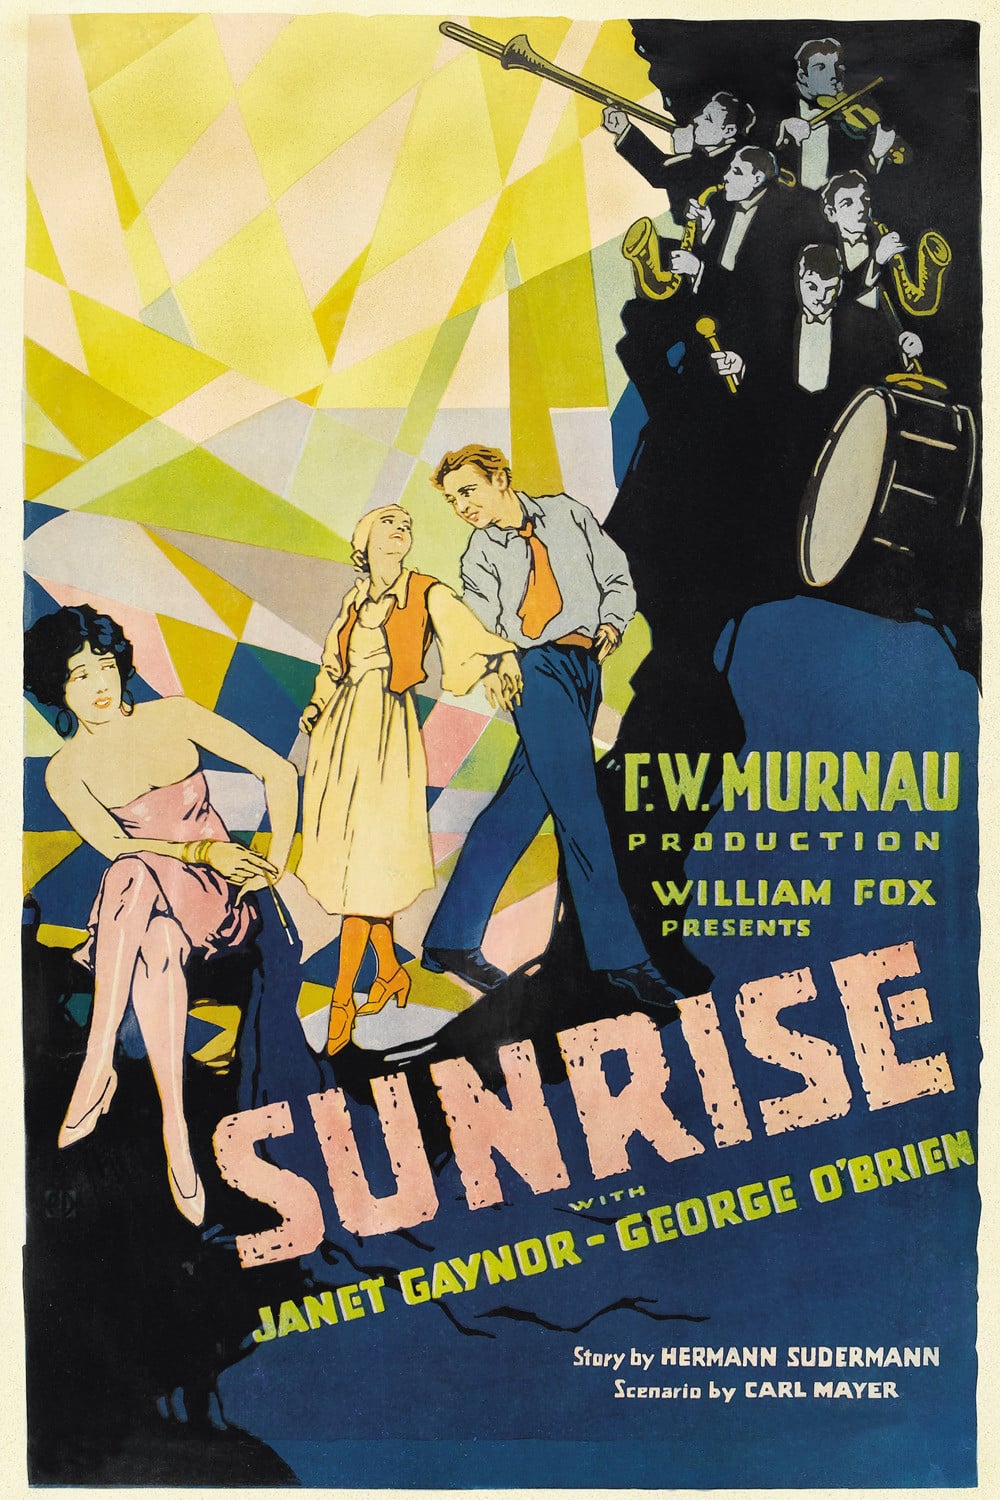 선라이즈.Sunrise.A Song Of Two Humans.1927.BW Photo-Image